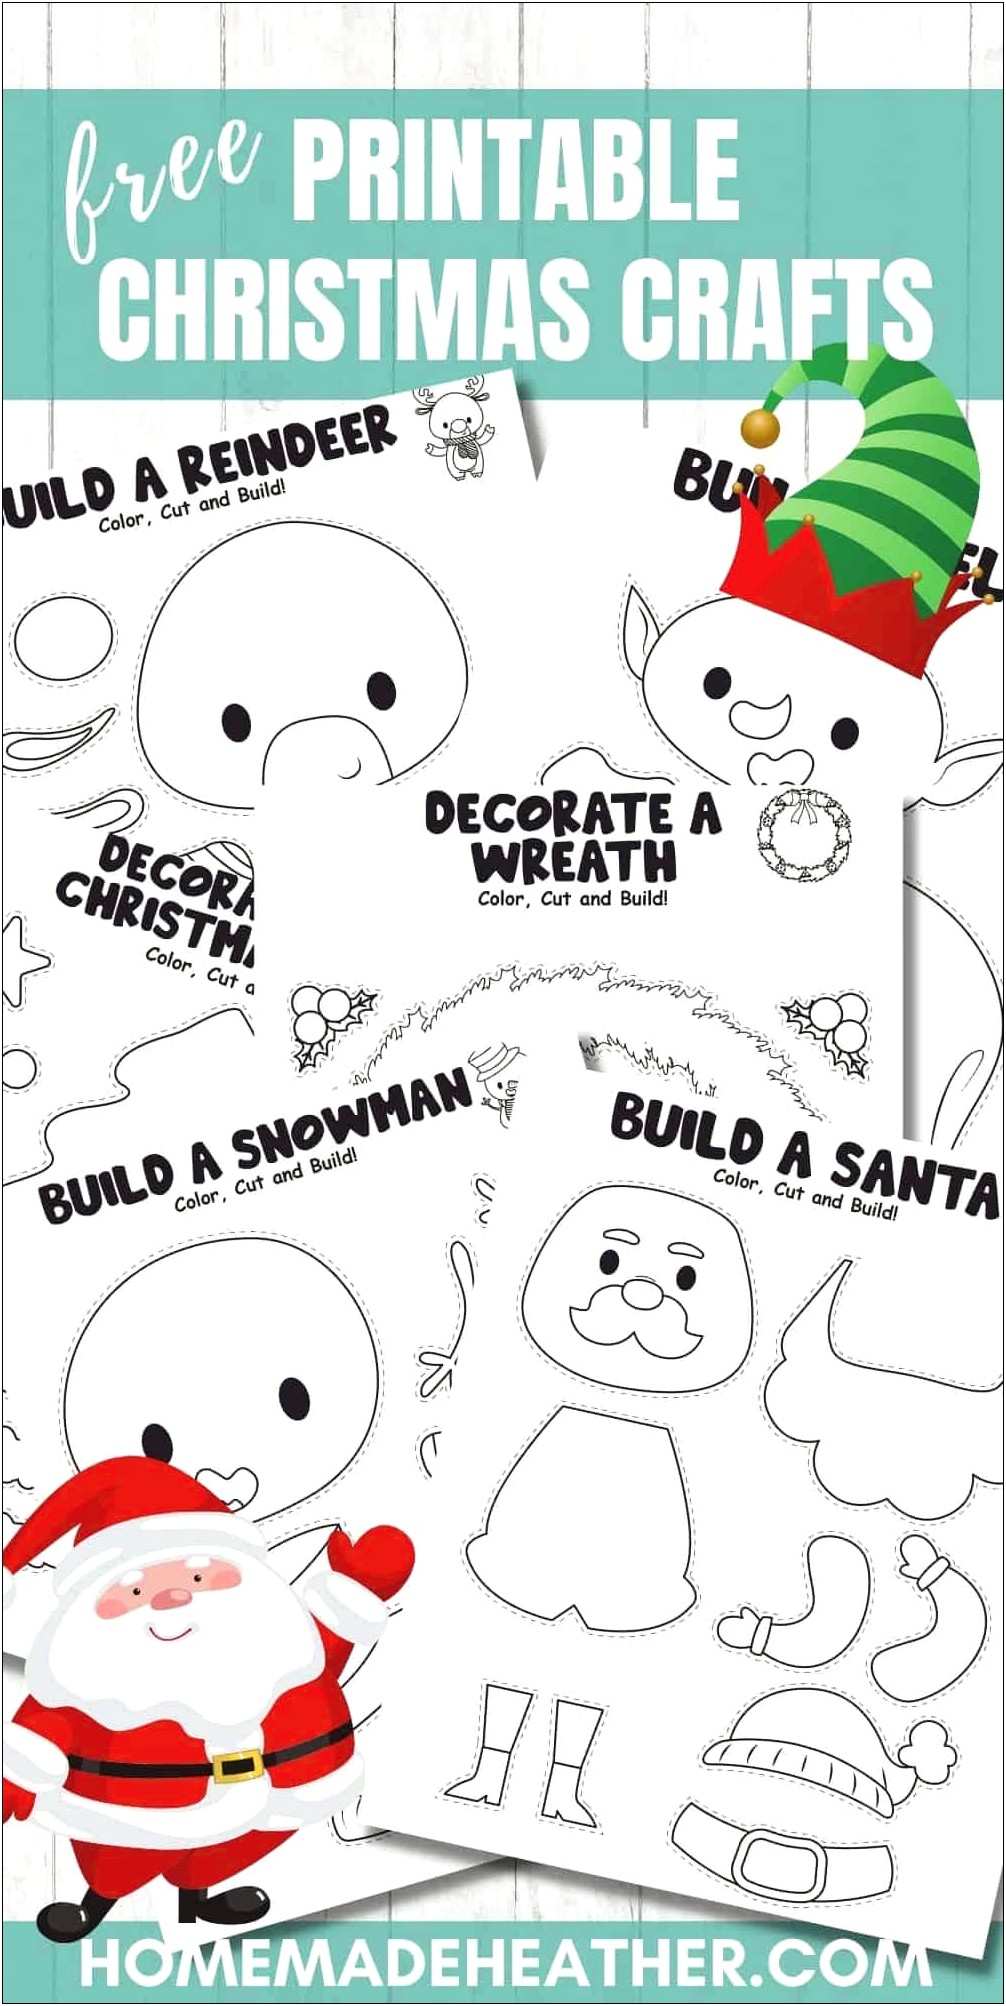 Free Printable Christmas Templates For Kids Templates : Resume